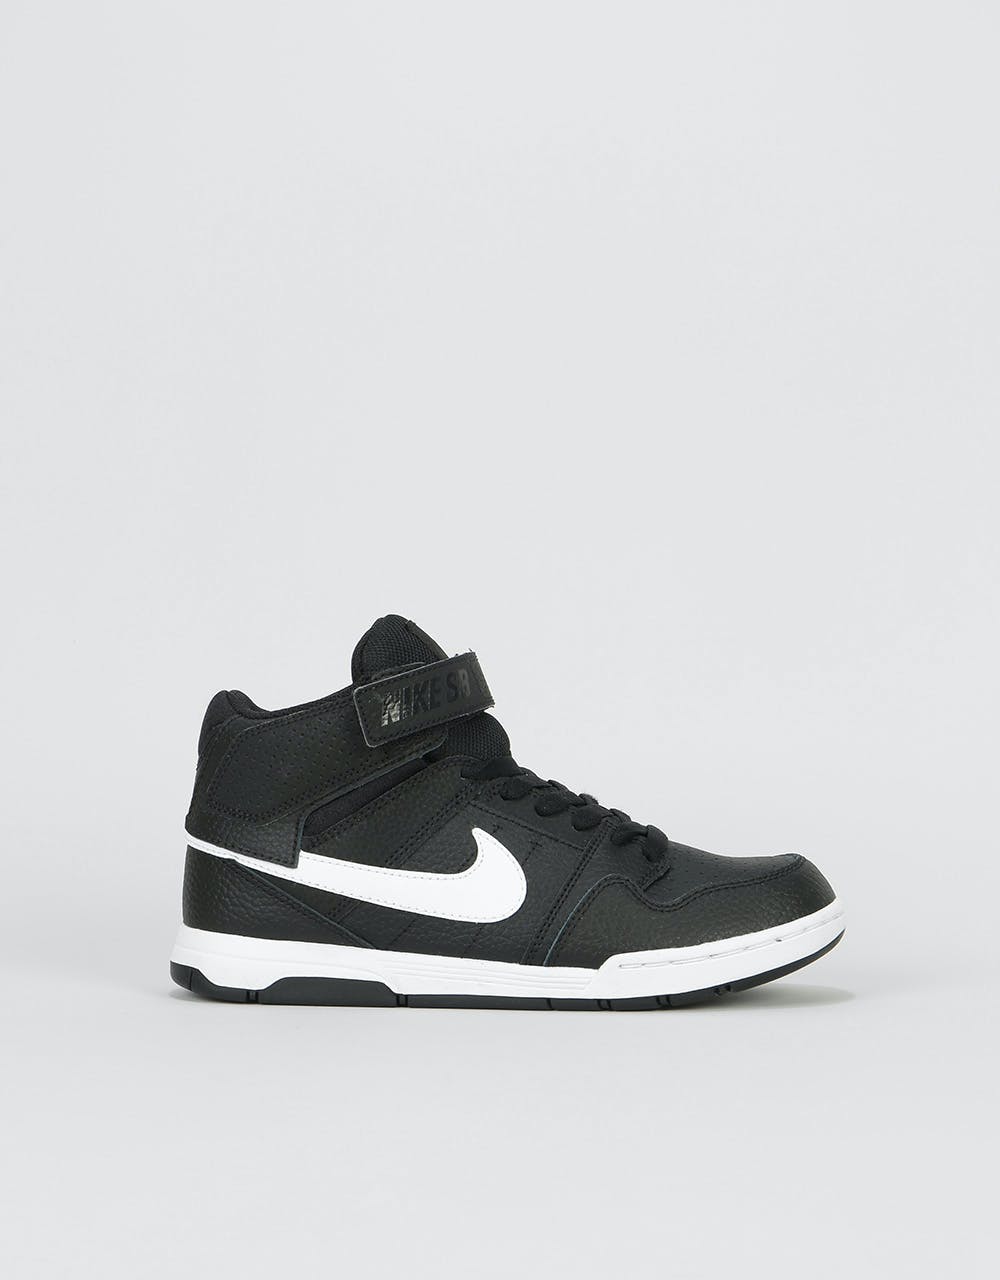 Nike SB Mogan Mid 2 Kids Skate Shoes - Black/White